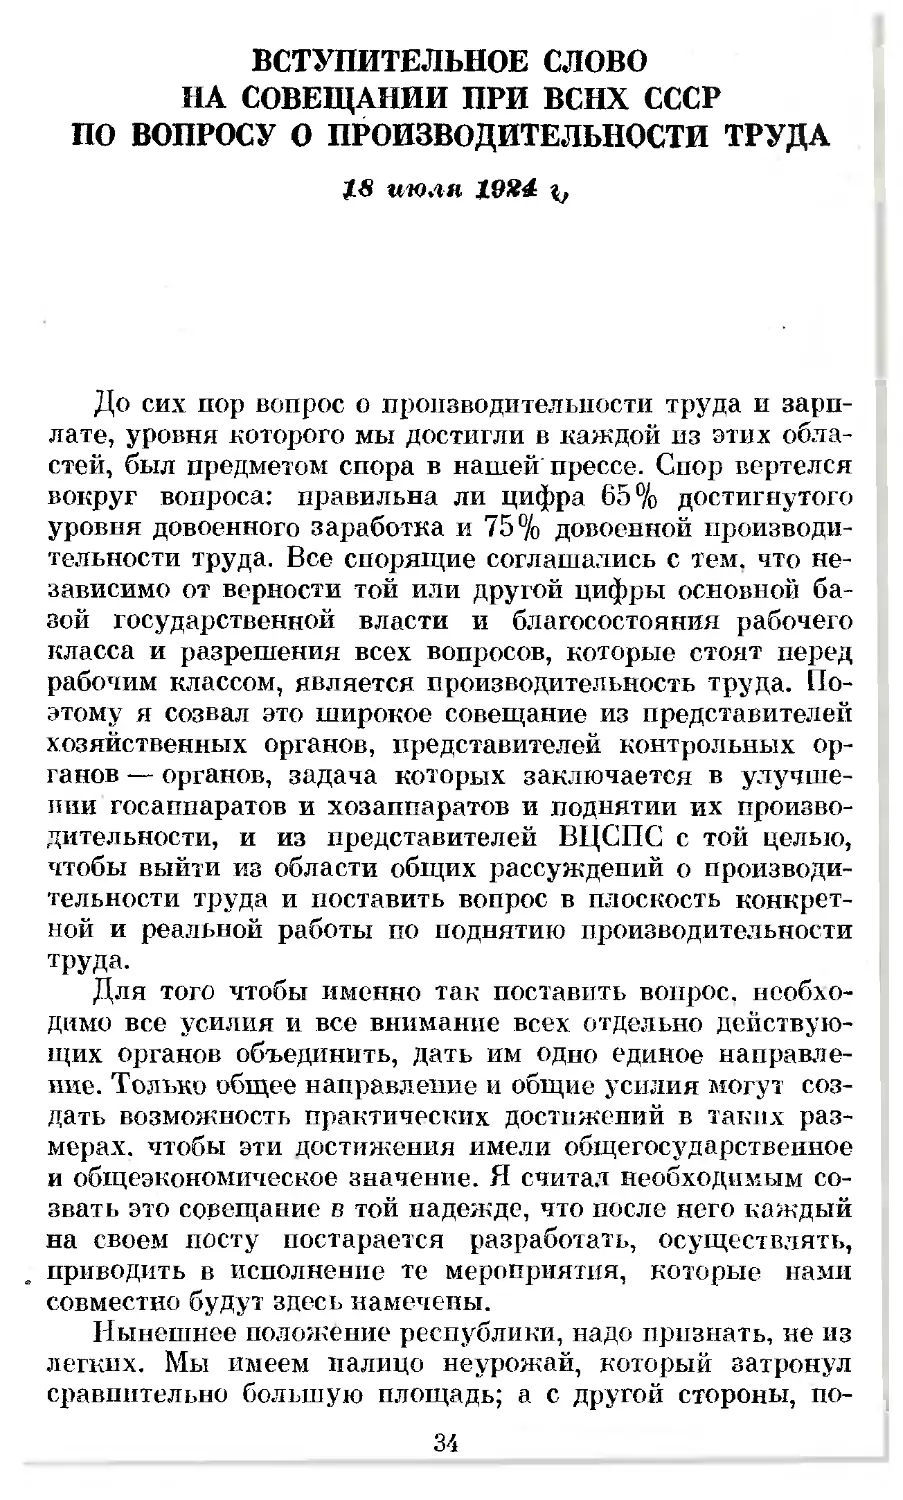 Вступительное слово на совещании при ВСНХ СССР по вопросу о производительности труда. 18 июля 1924 г